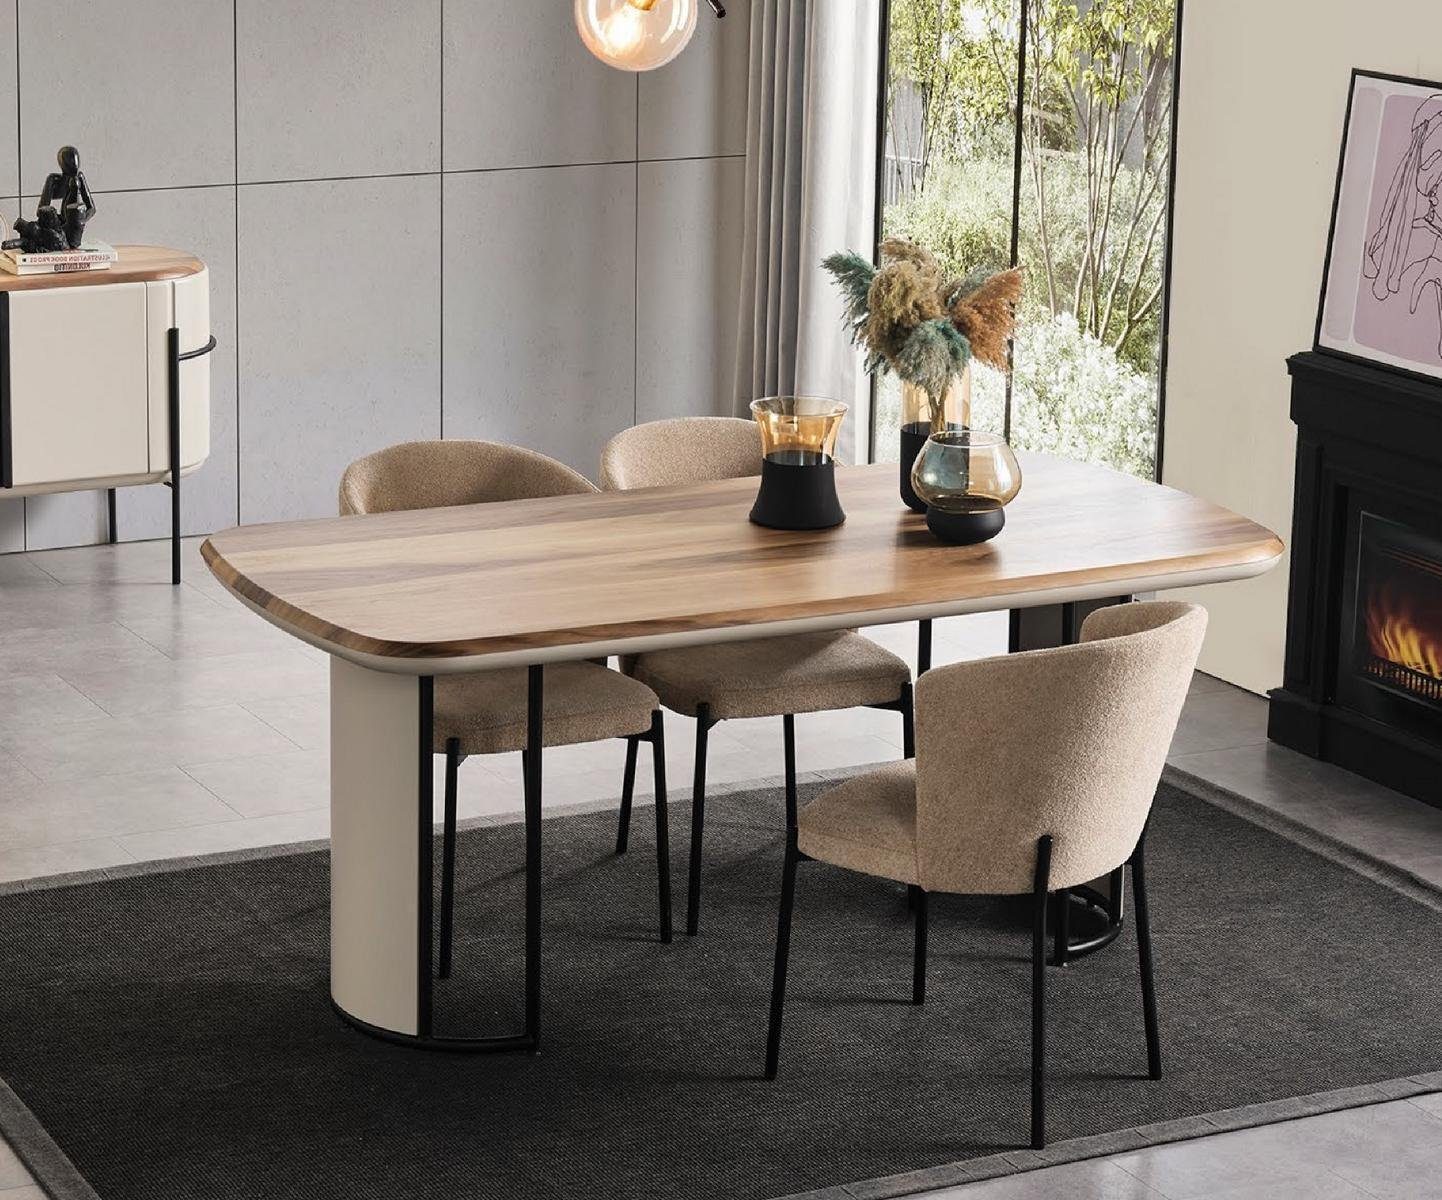 JVmoebel Esstisch Esstisch Tische Gruppe Tisch Esszimmer Garnitur Beige Holz Design